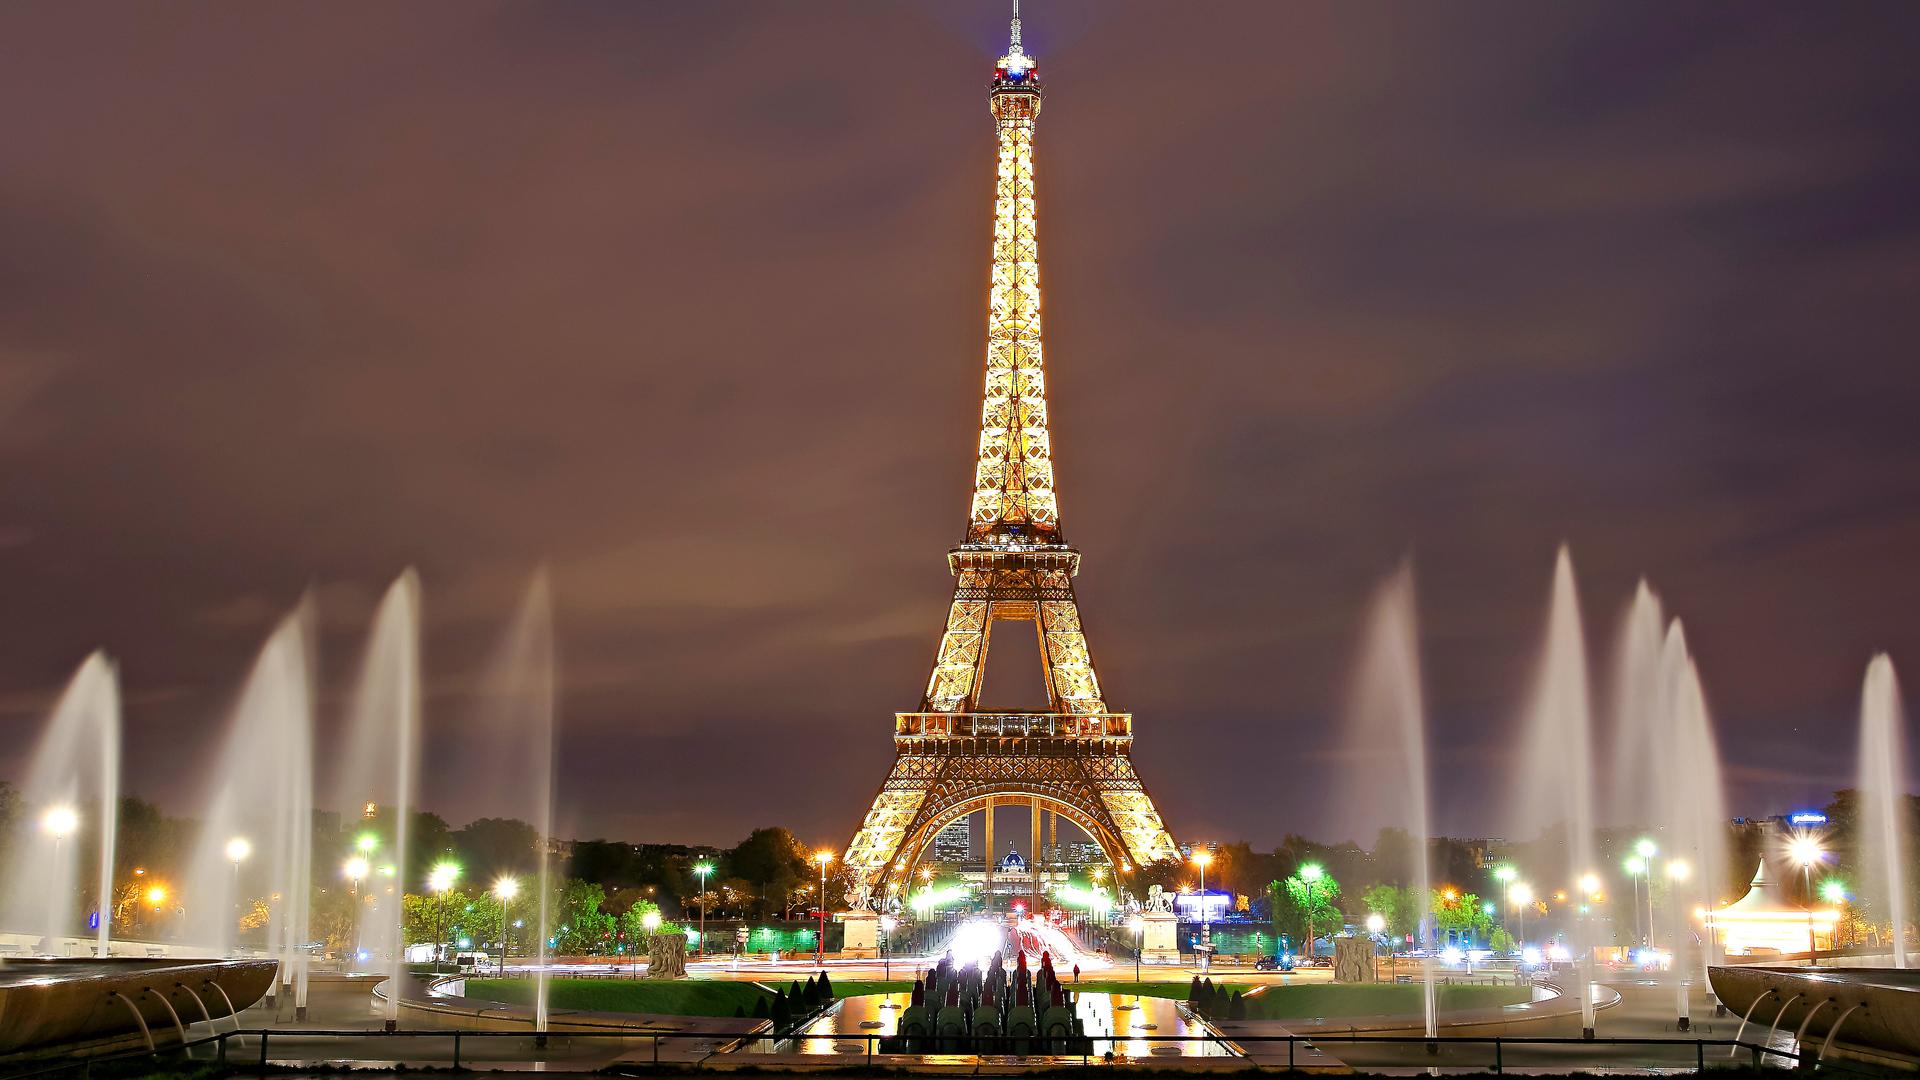 Paris Eiffel Tower 4K Ultra HD WallpaperK Wallpaper.Net